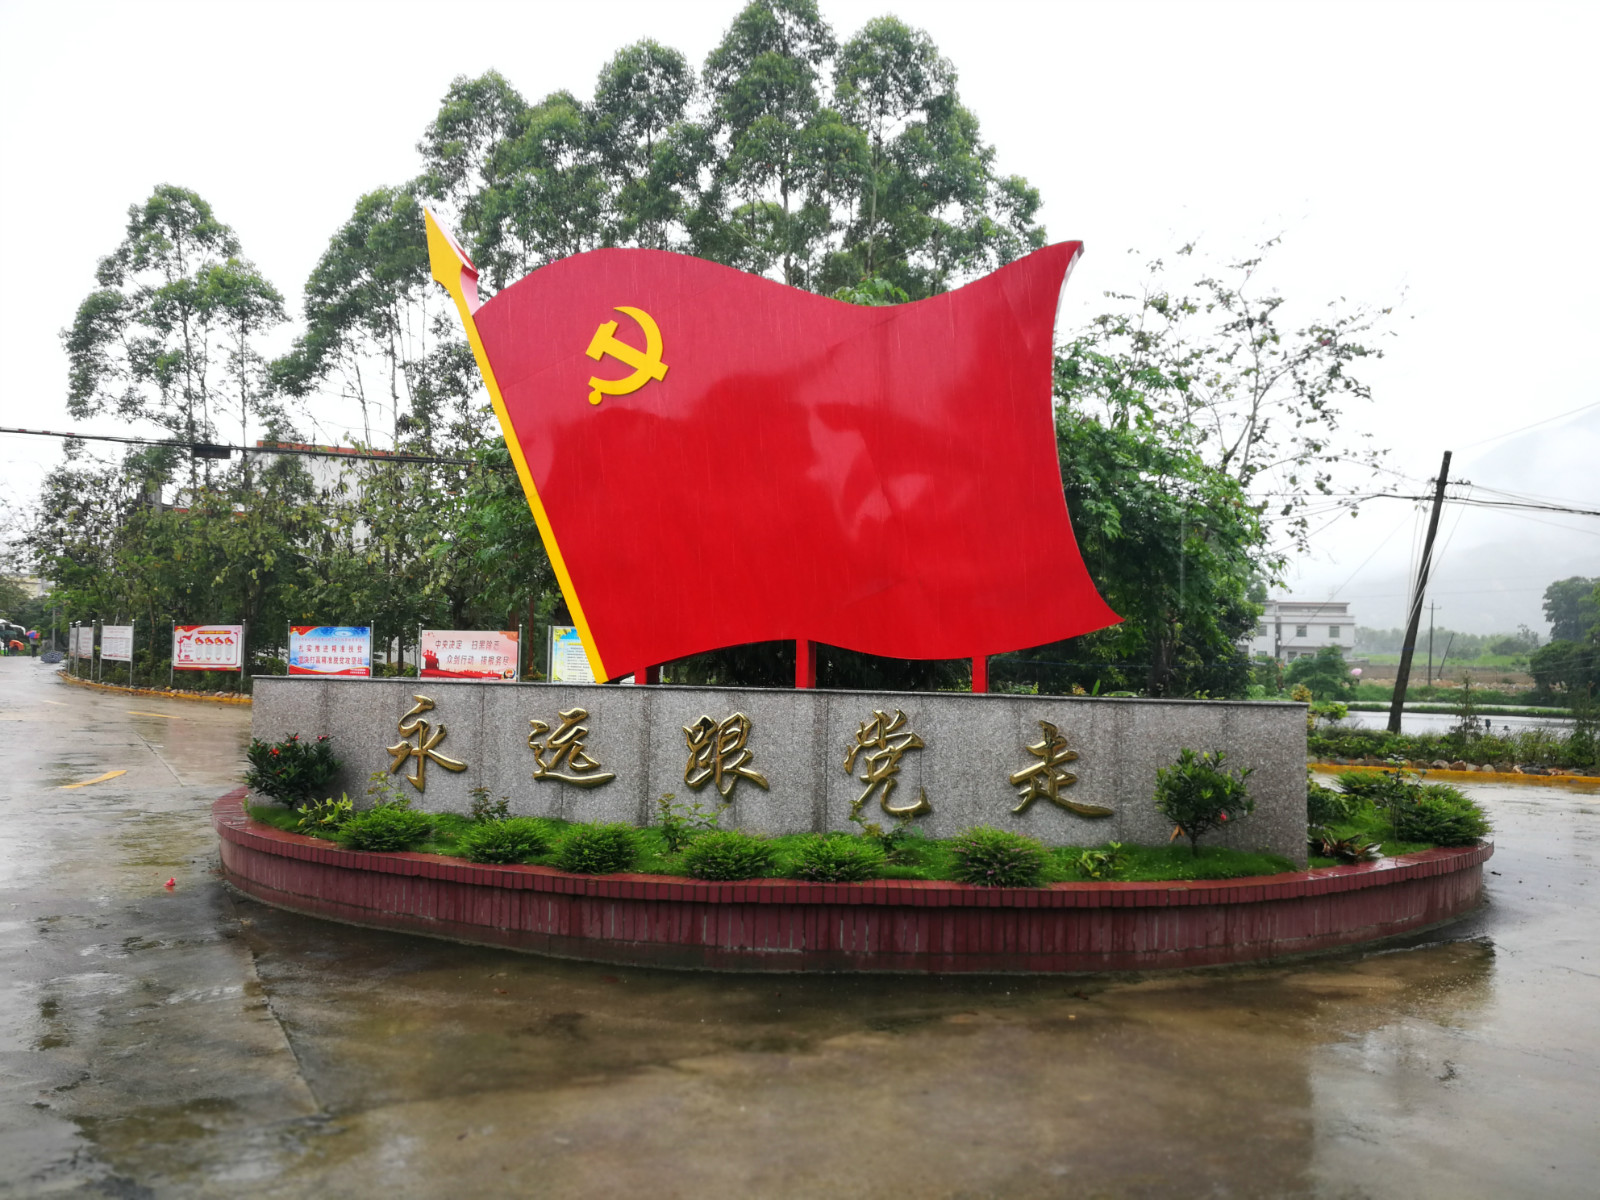 广东揭西:启动千人红色之旅 打造全域旅游示范区